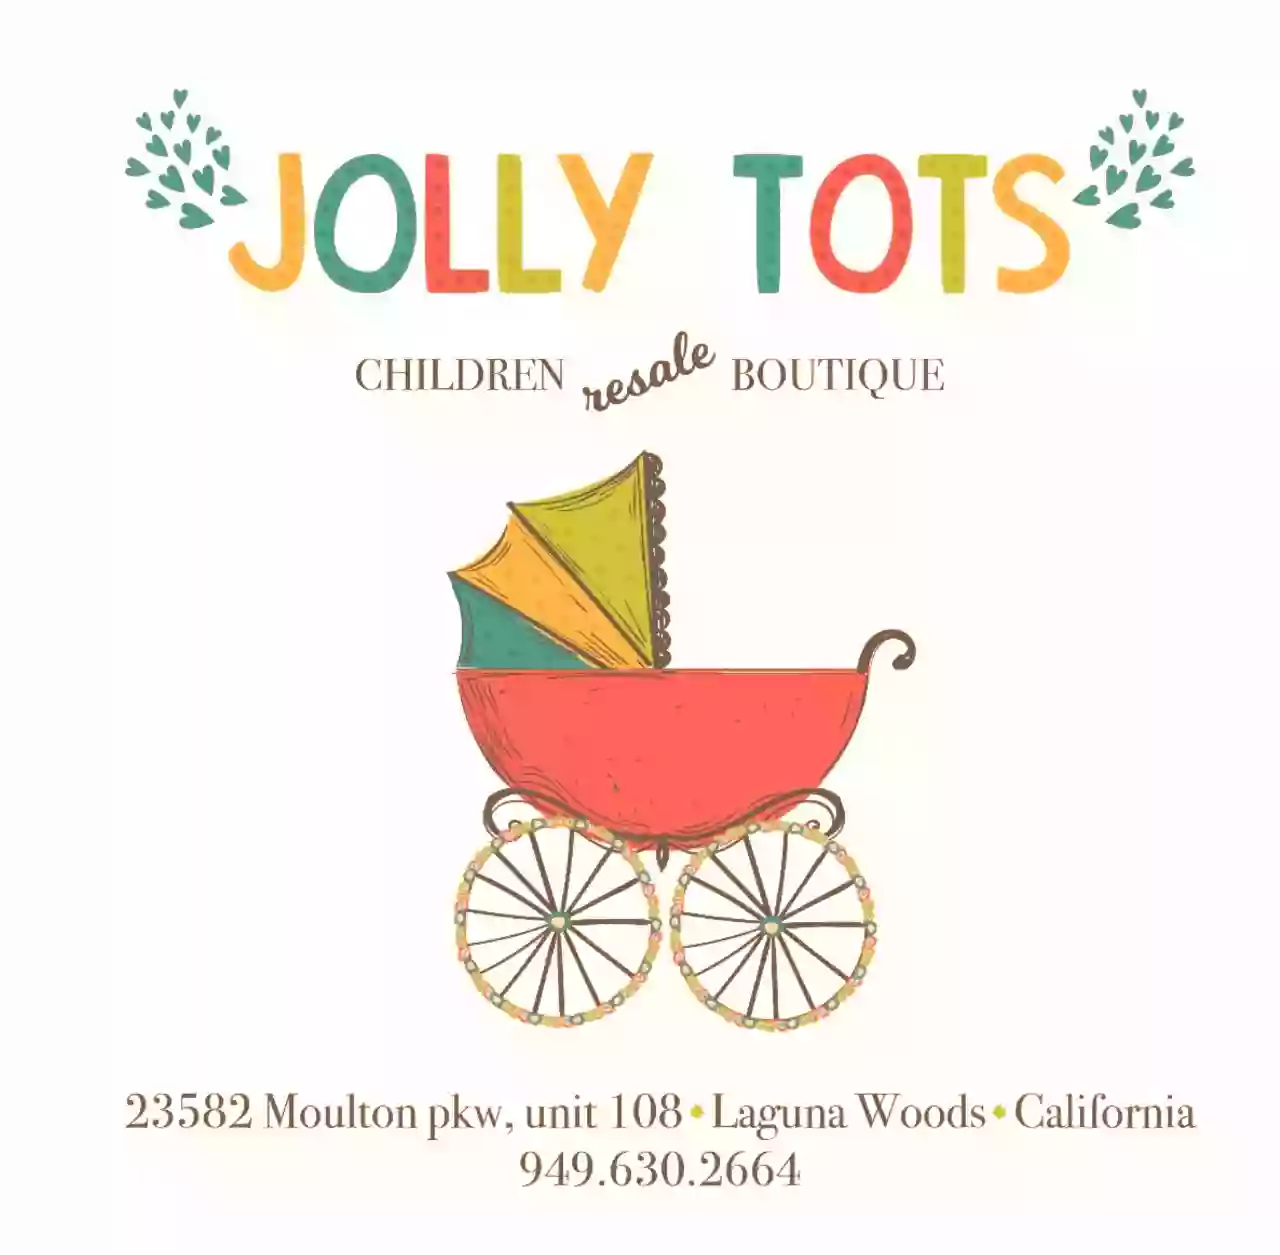 Jolly Tots Children's resale Boutique